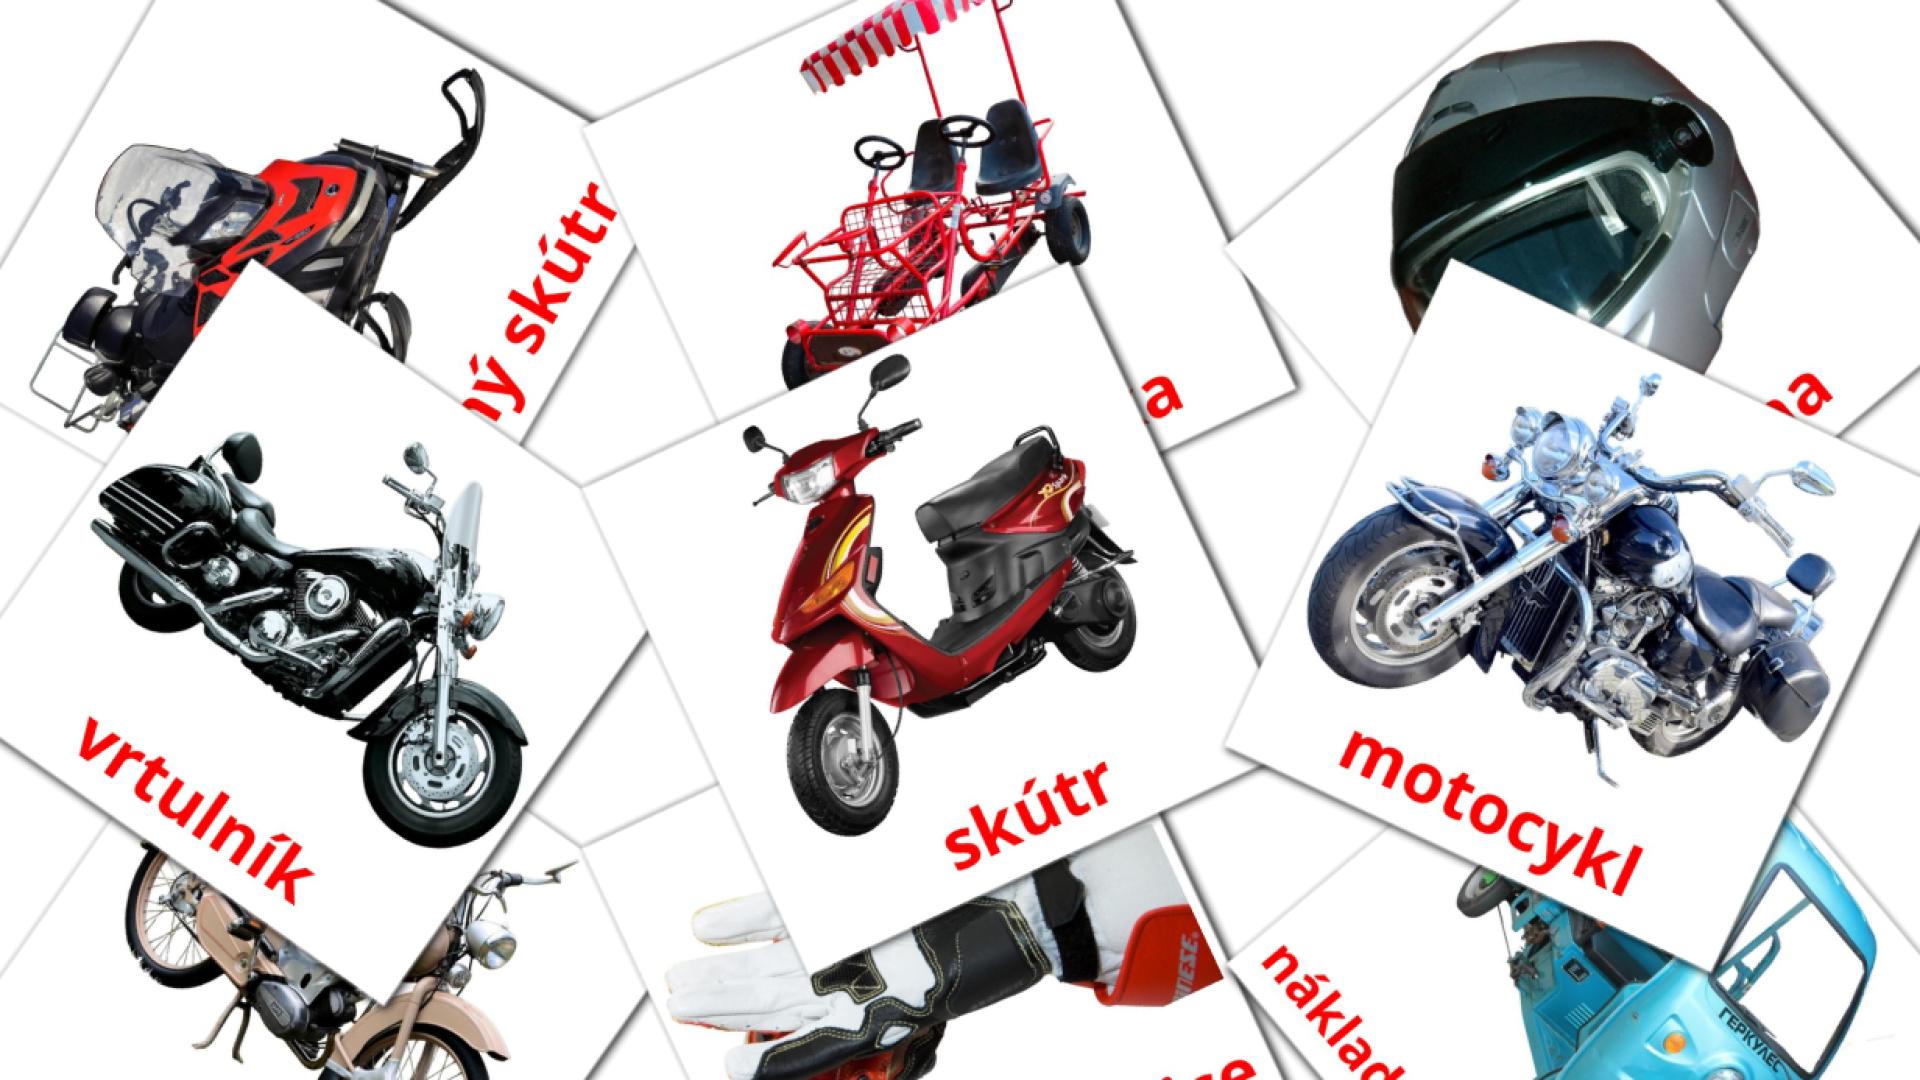 14 Imagiers Motocykly